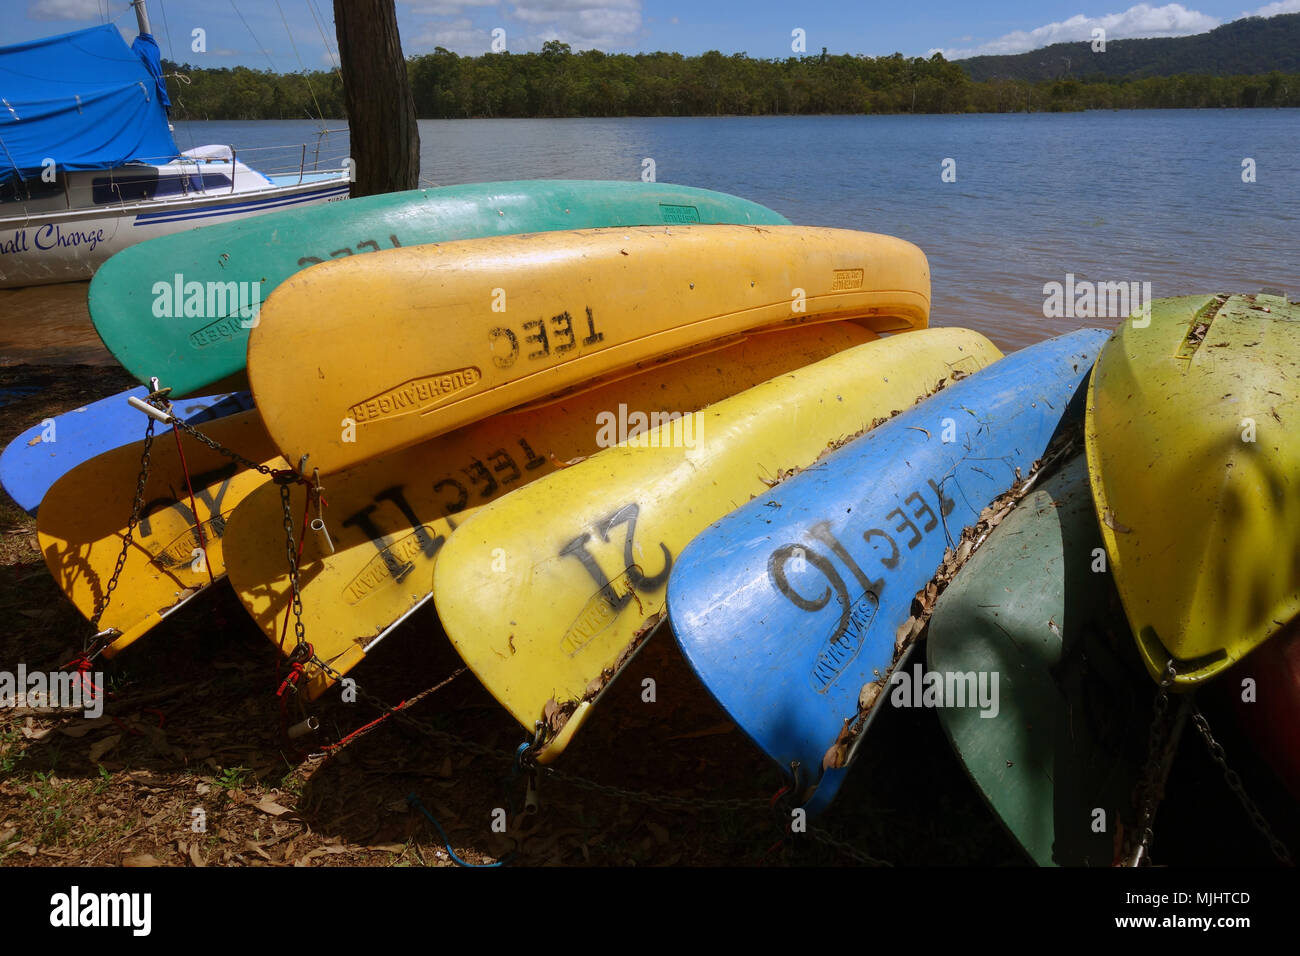 Canoas pertenecientes a Tinaroo Centro de Educación Ambiental en las orillas del lago Tinaroo, Atherton Tablelands, Queensland, Australia. No hay PR Foto de stock